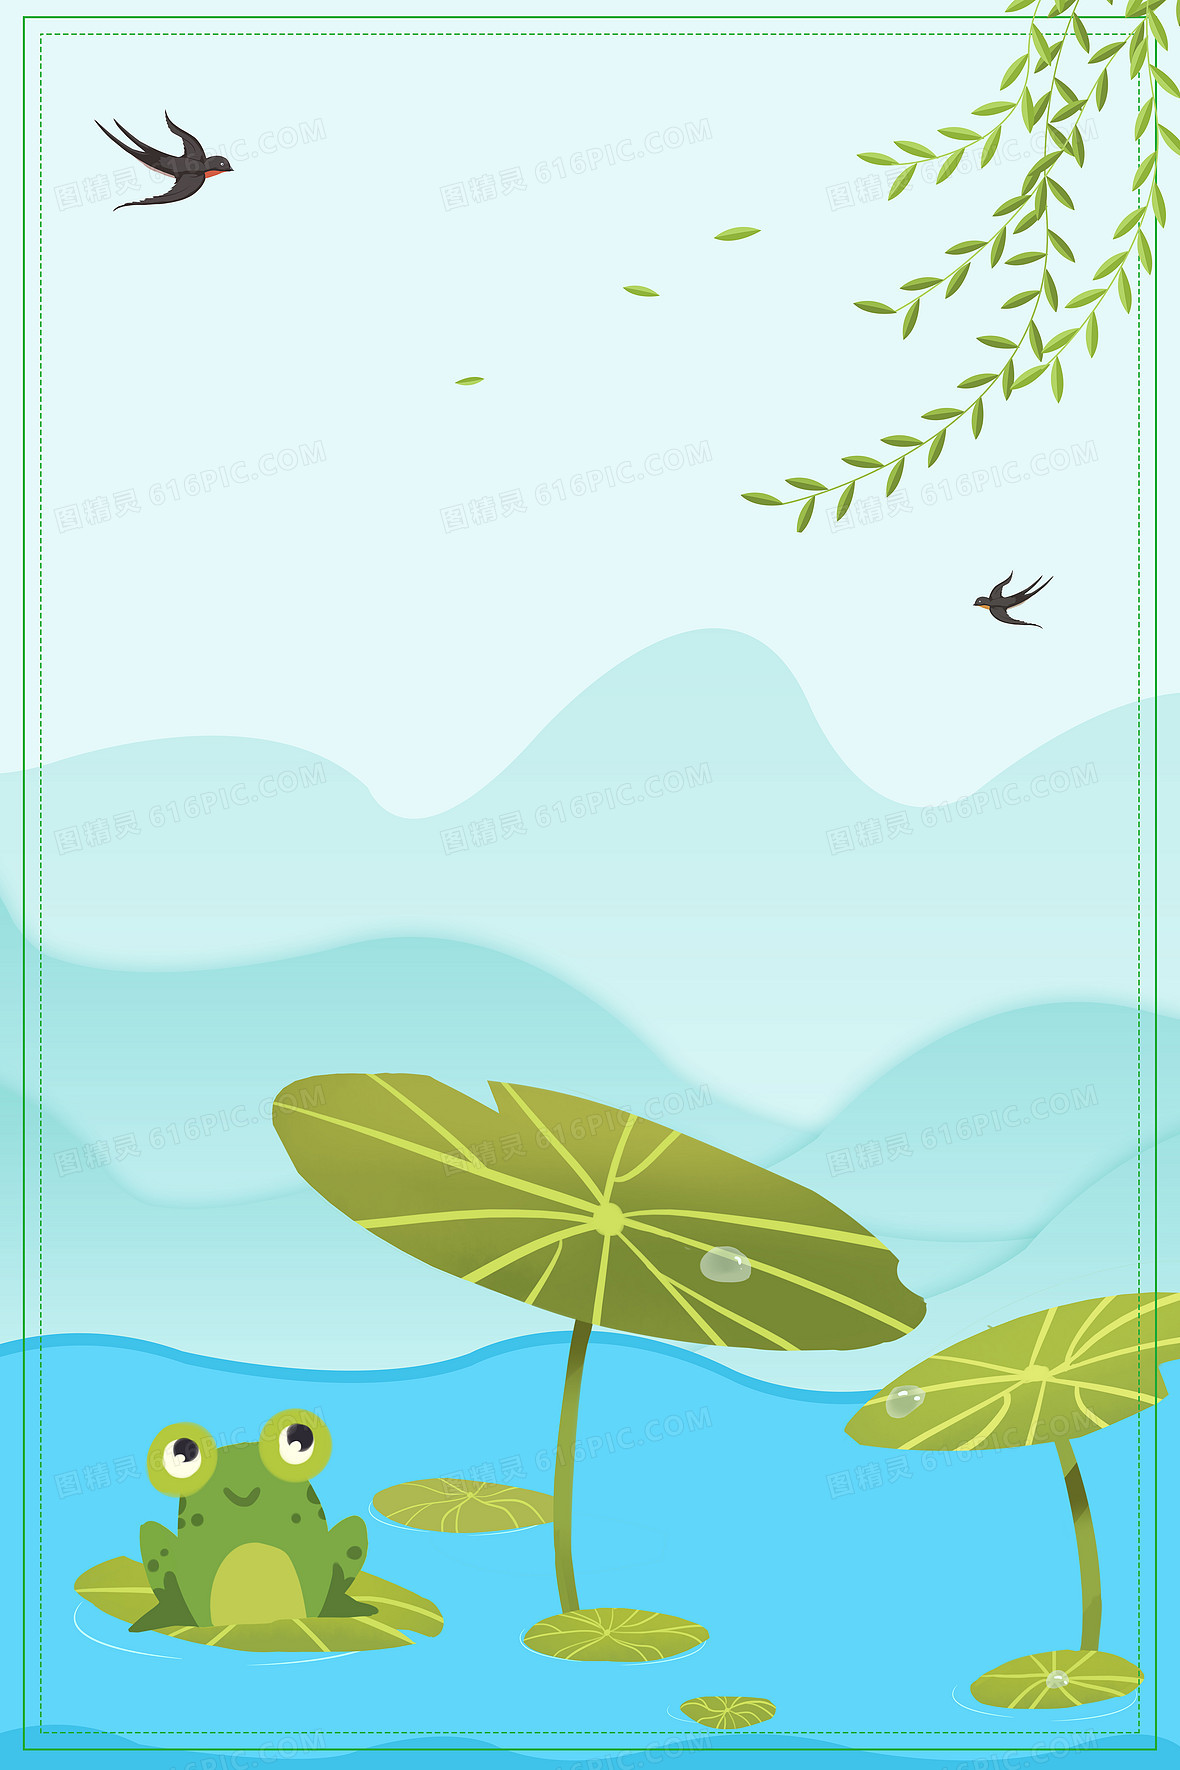 卡通池塘荷葉青蛙背景 卡通 池塘 荷葉背景圖片免費下載